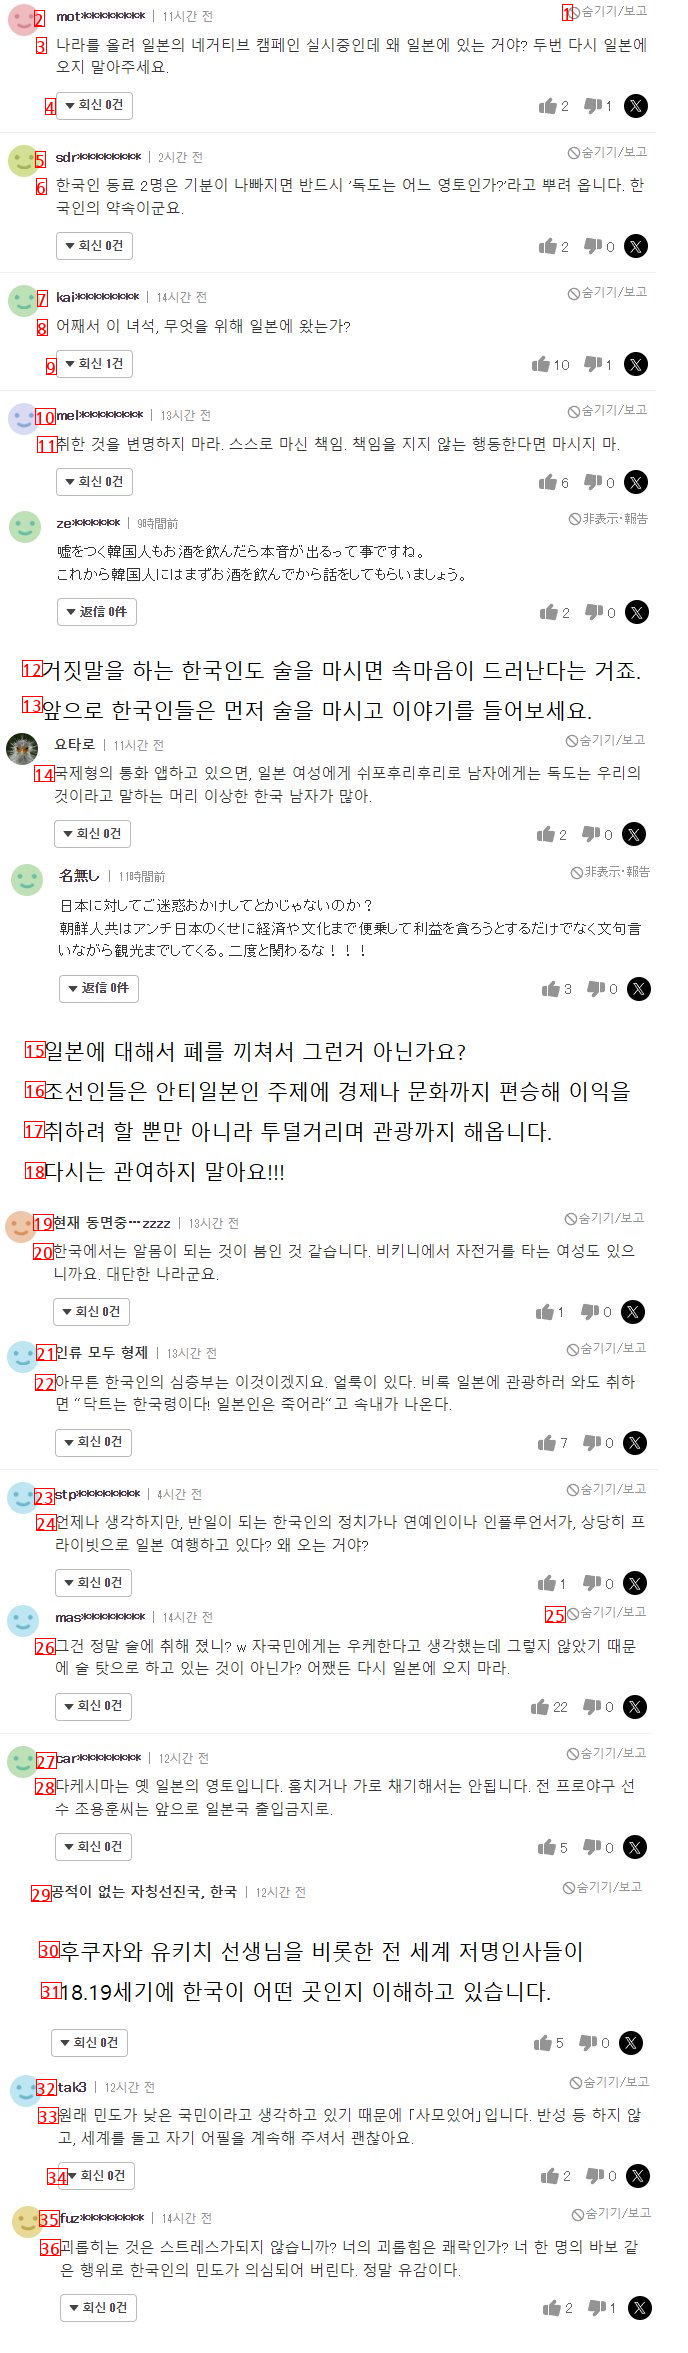 일본"""" 한국은 우리한테 사과해야지.."""" 야구선수 알몸사건